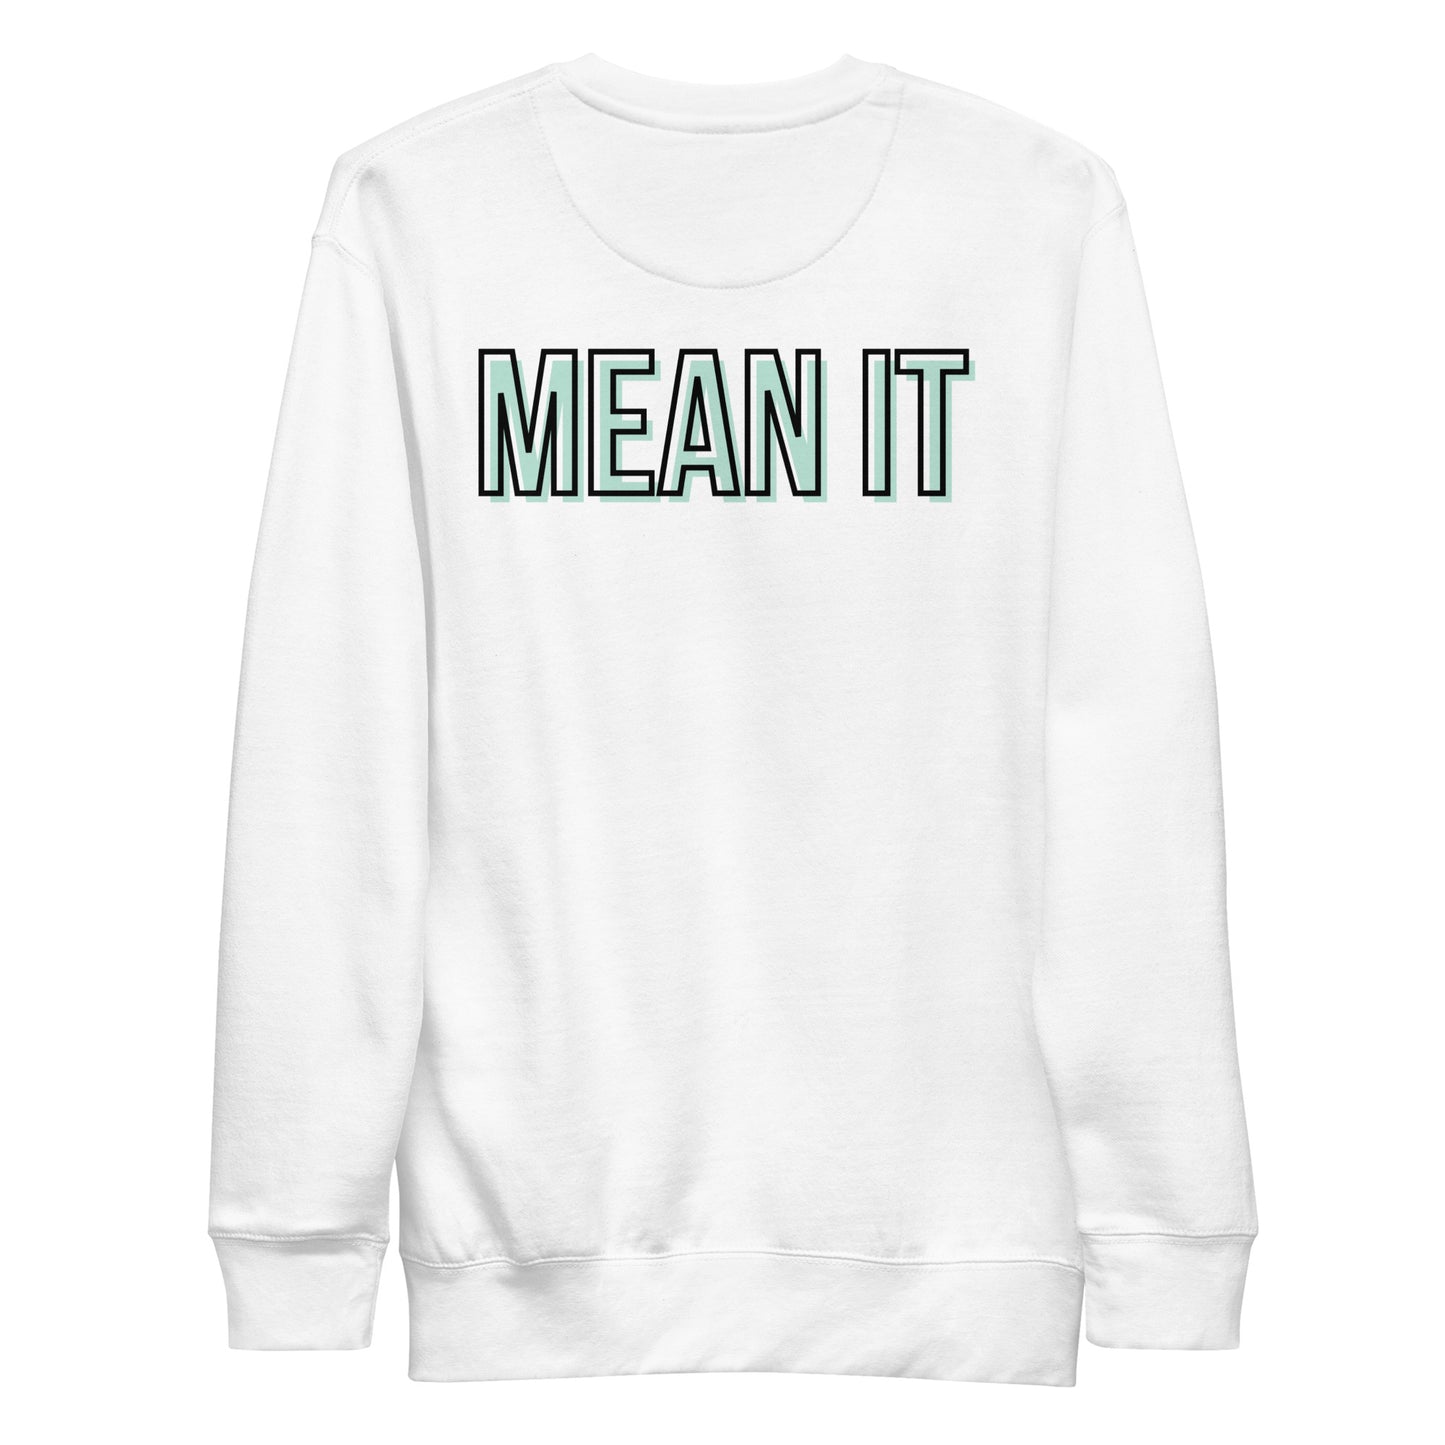 Love You, Mean It Sweatshirt